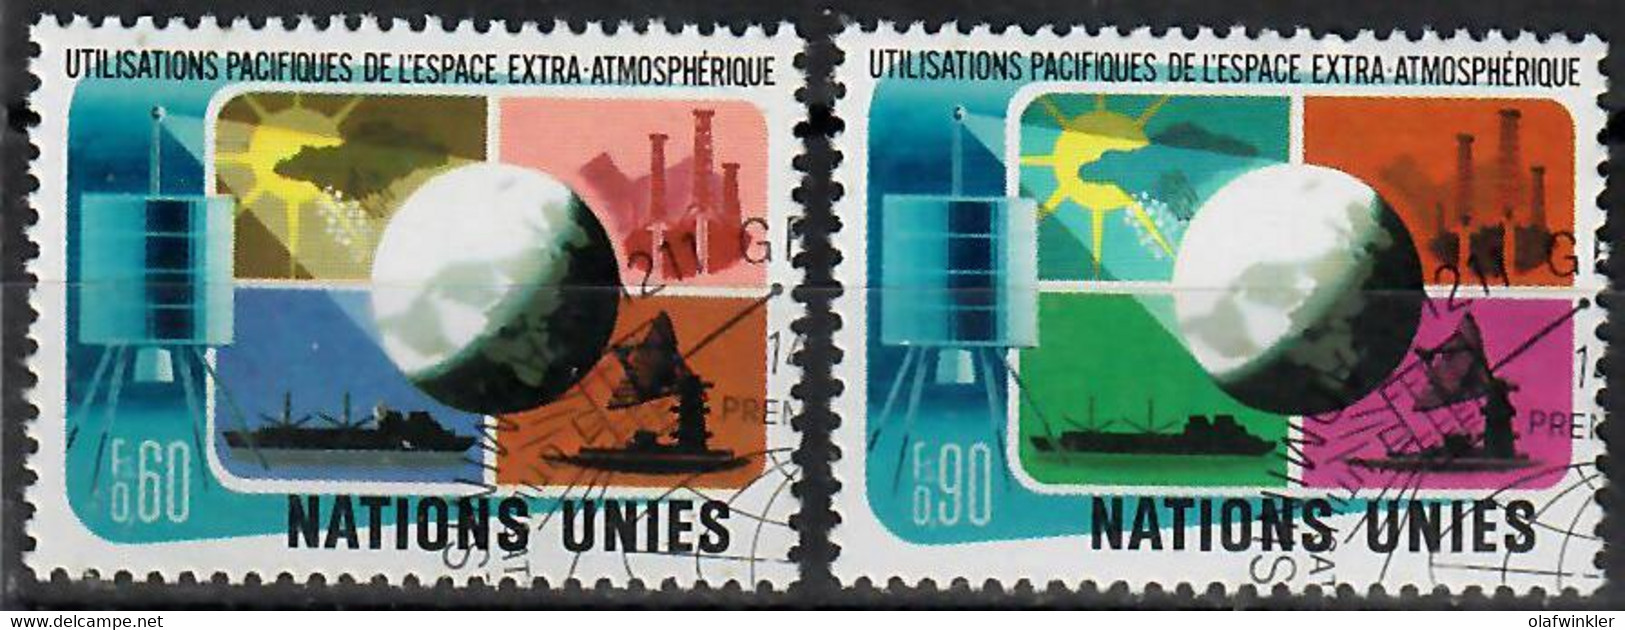 1975 Utilisations Pacifiques De L'espace Zum 46-47 / Mi 46-47 / YT 46-47 / Sc 46-47 Oblitéré / Gestempelt /used [zro] - Used Stamps